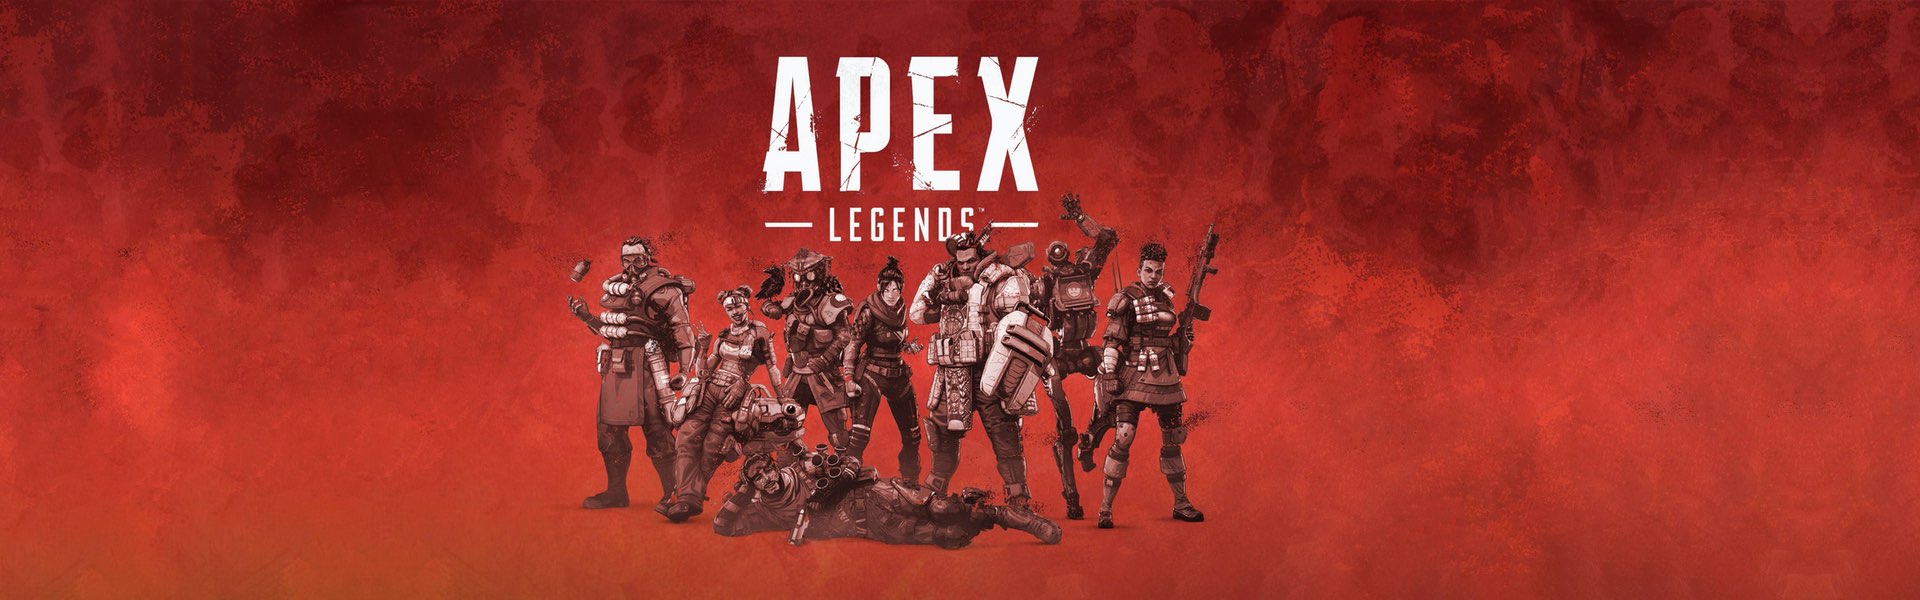 Apex Legends_Slider